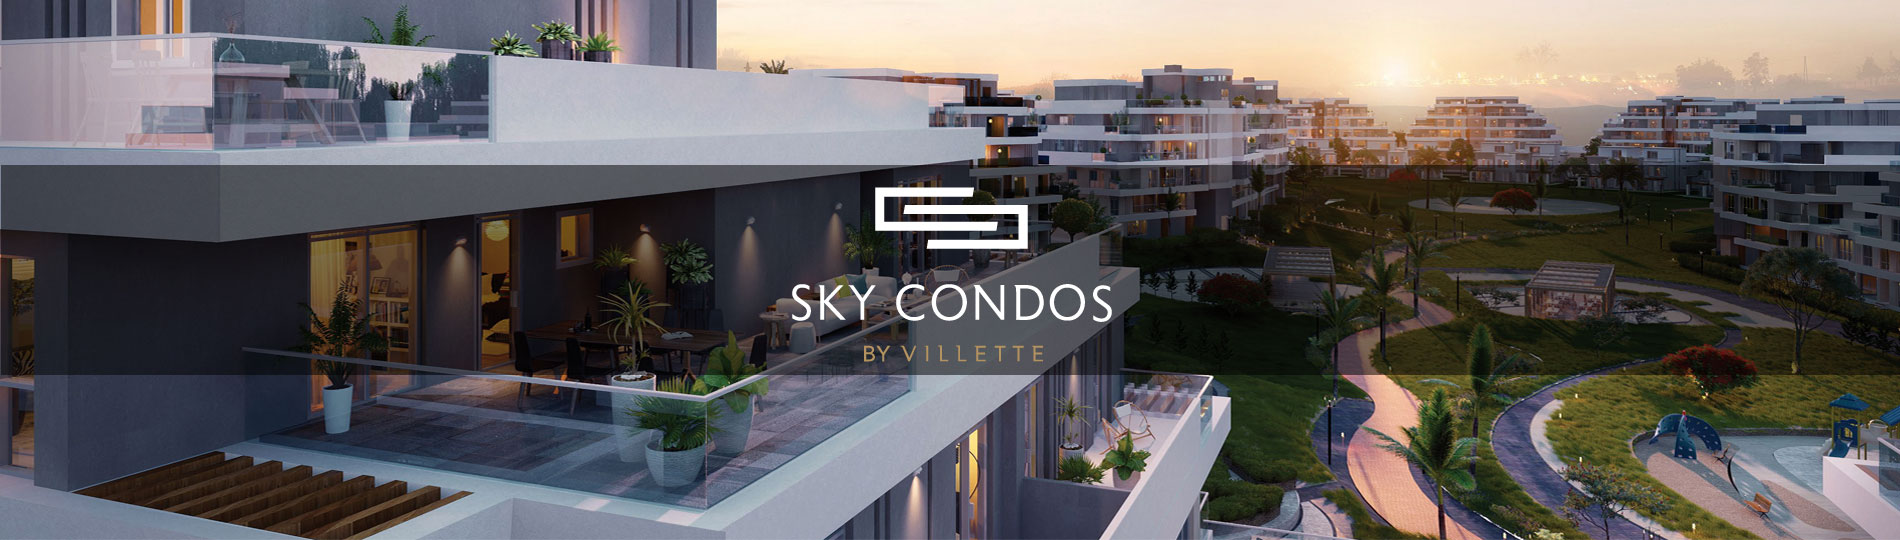 Sky Condos Sodic – Sky Condos Compound